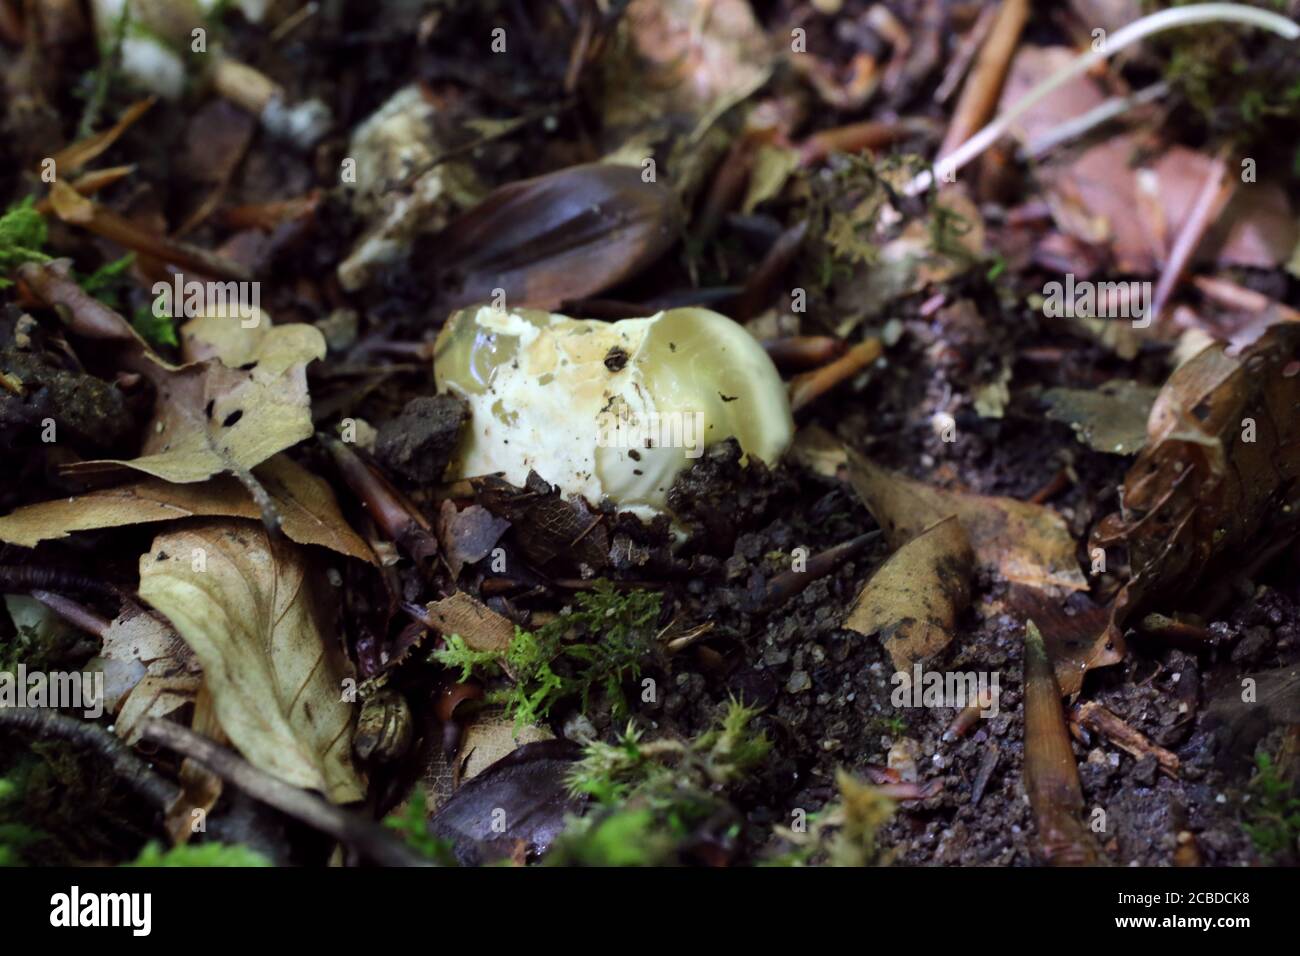 Mutinus caninus - Wild mushroom shot in the summer. Stock Photo